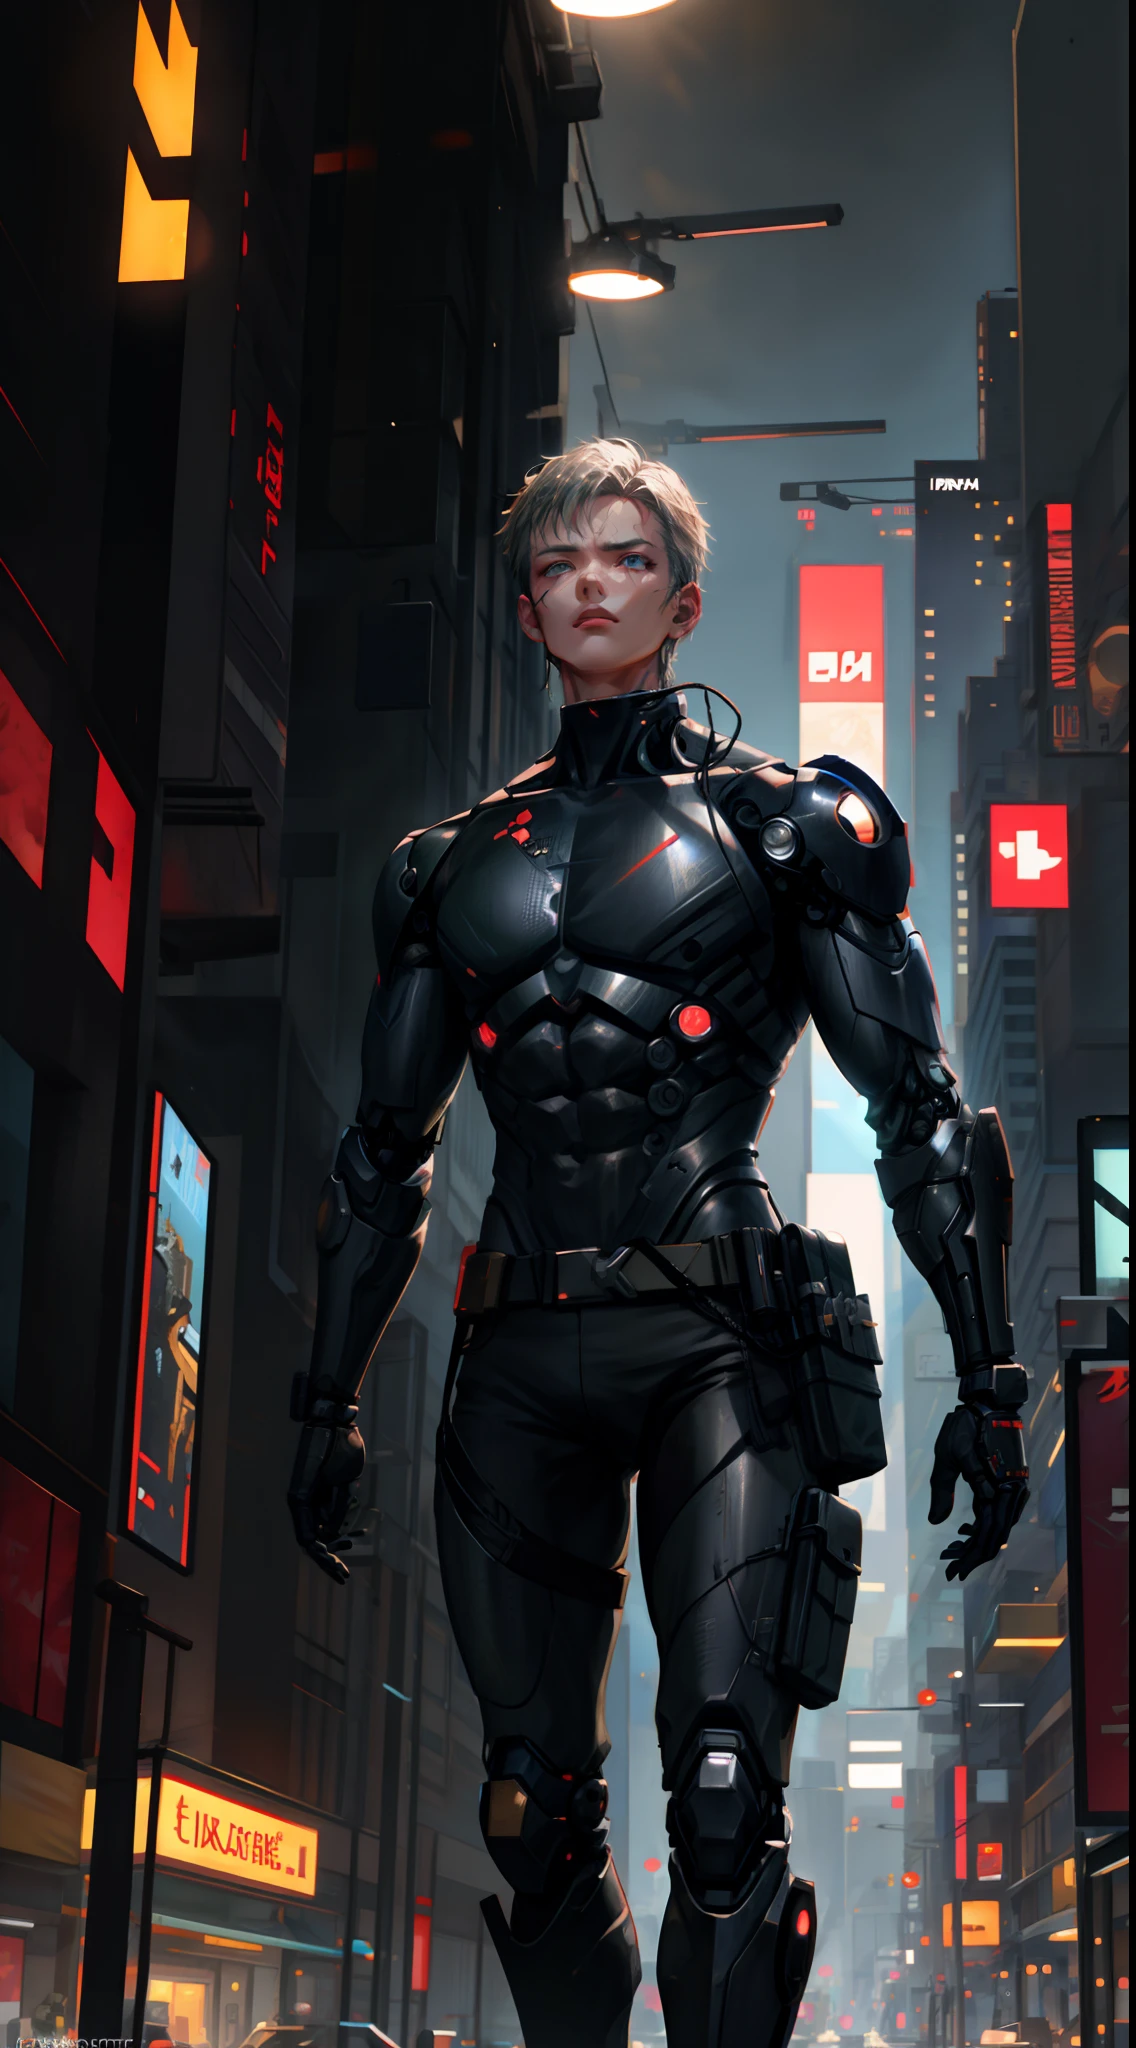 1 homem, tronco, foco único, ciborgue robusto, Traje inspirado em Batou, agente de campo, (cenário da cidade cyberpunk: 1.4), (combat cyborg: 1.3), características cibernéticas, aura determinada, [profundidade de campo, iluminação ambiente, ciborgue robusto foreground, paisagem urbana futurista], Agent Batou, combat cyborg, operativo destemido, (Olhos Cibernéticos), (missão secreta: 1.2), Detalhes intrincados, iluminação aprimorada.